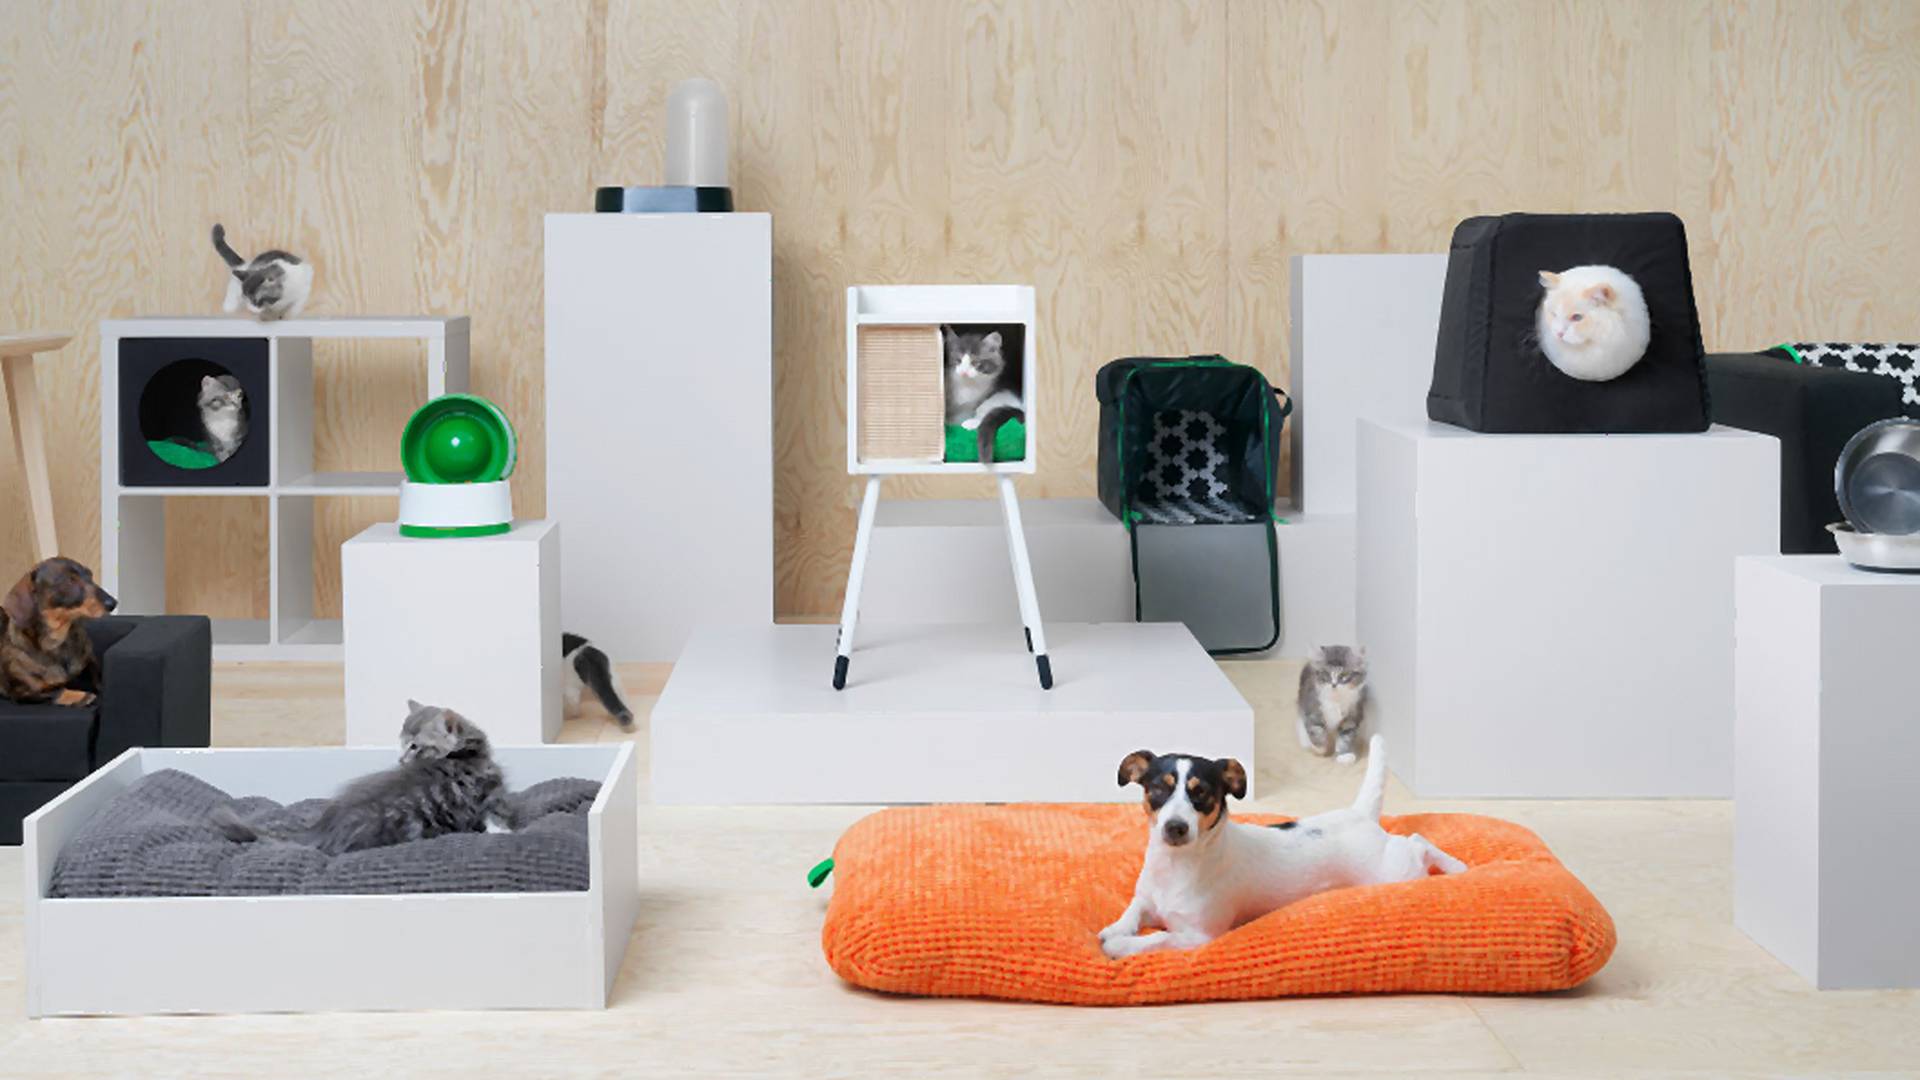 Ikea zatroszczy się również o domowe zwierzęta - powstała kolekcja gadżetów dla psów i kotów